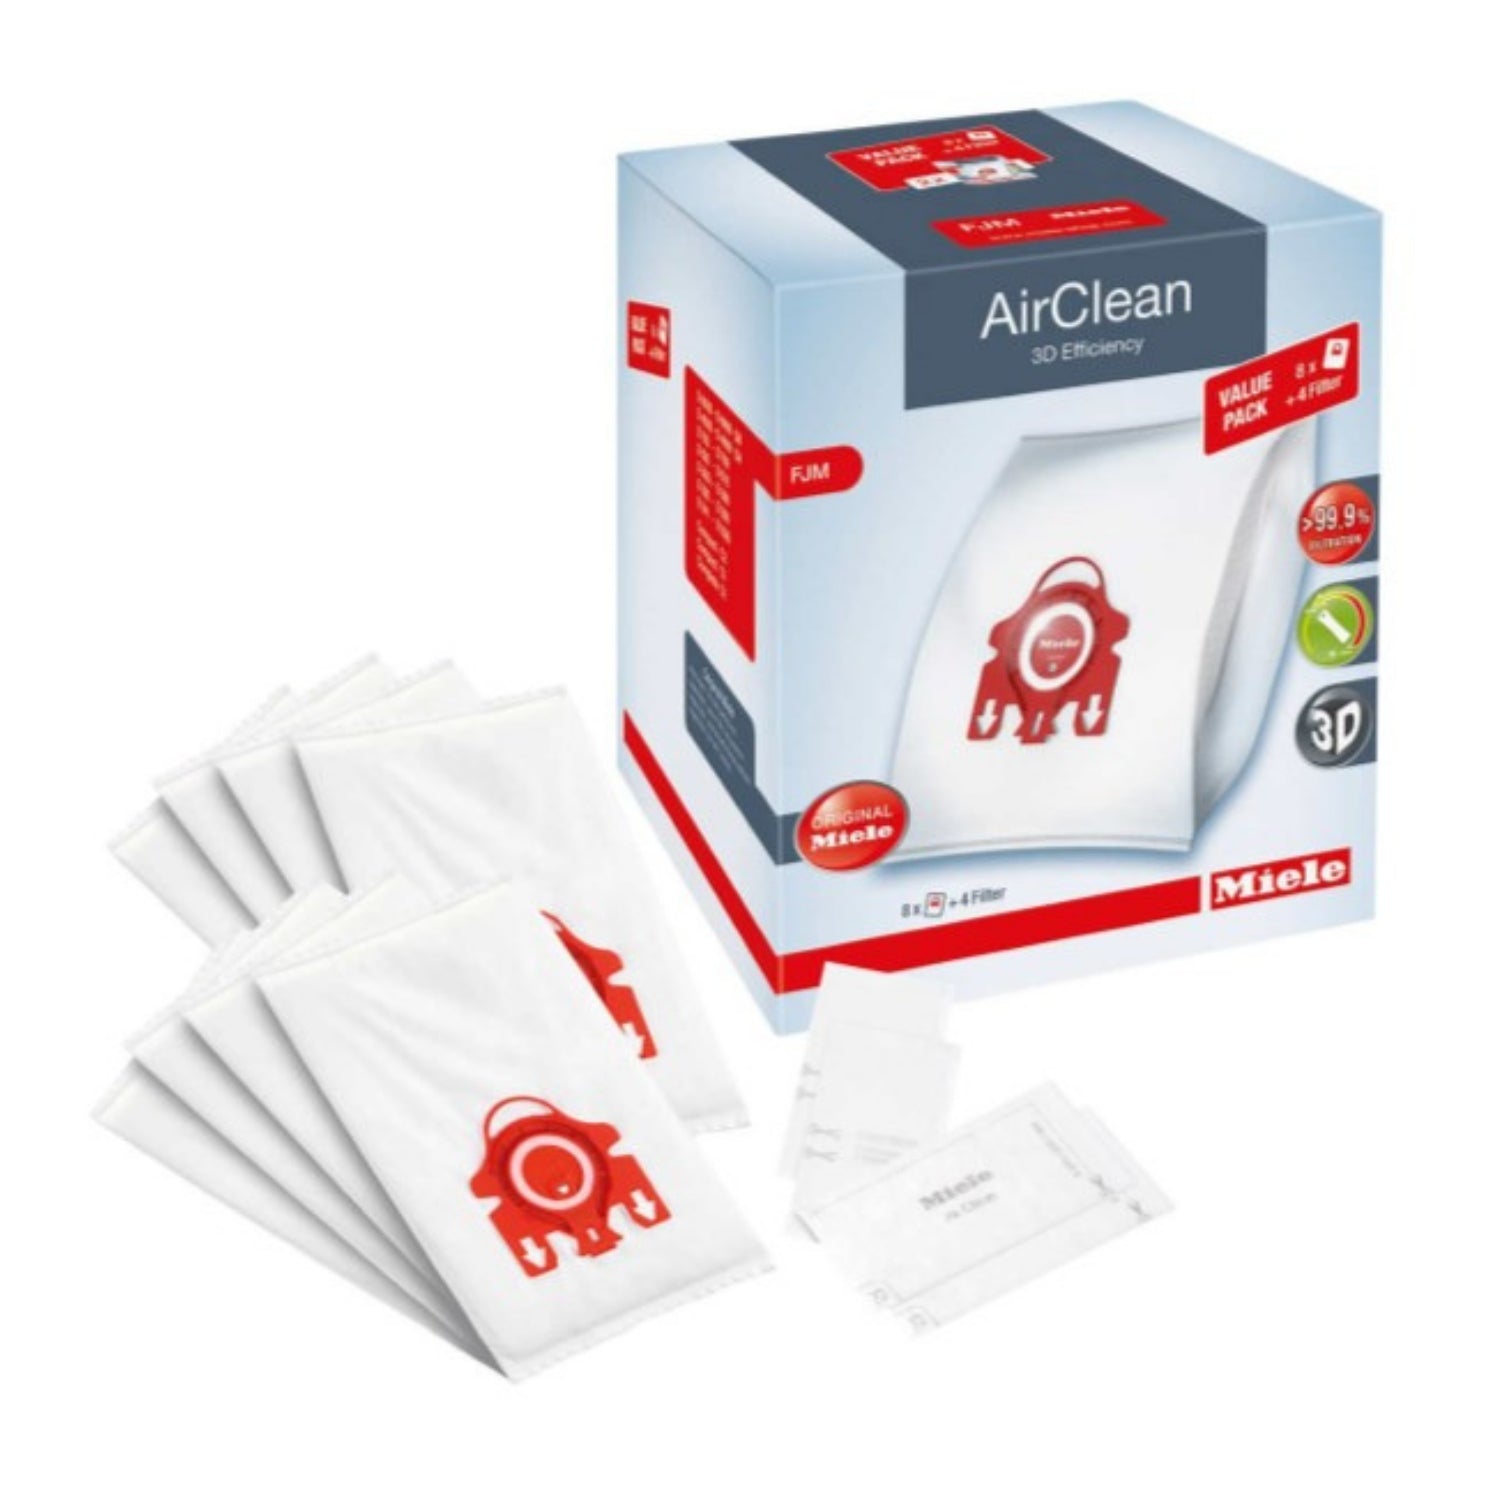  Miele AirClean 3D Efficiency FJM Vacuum Cleaner Bags